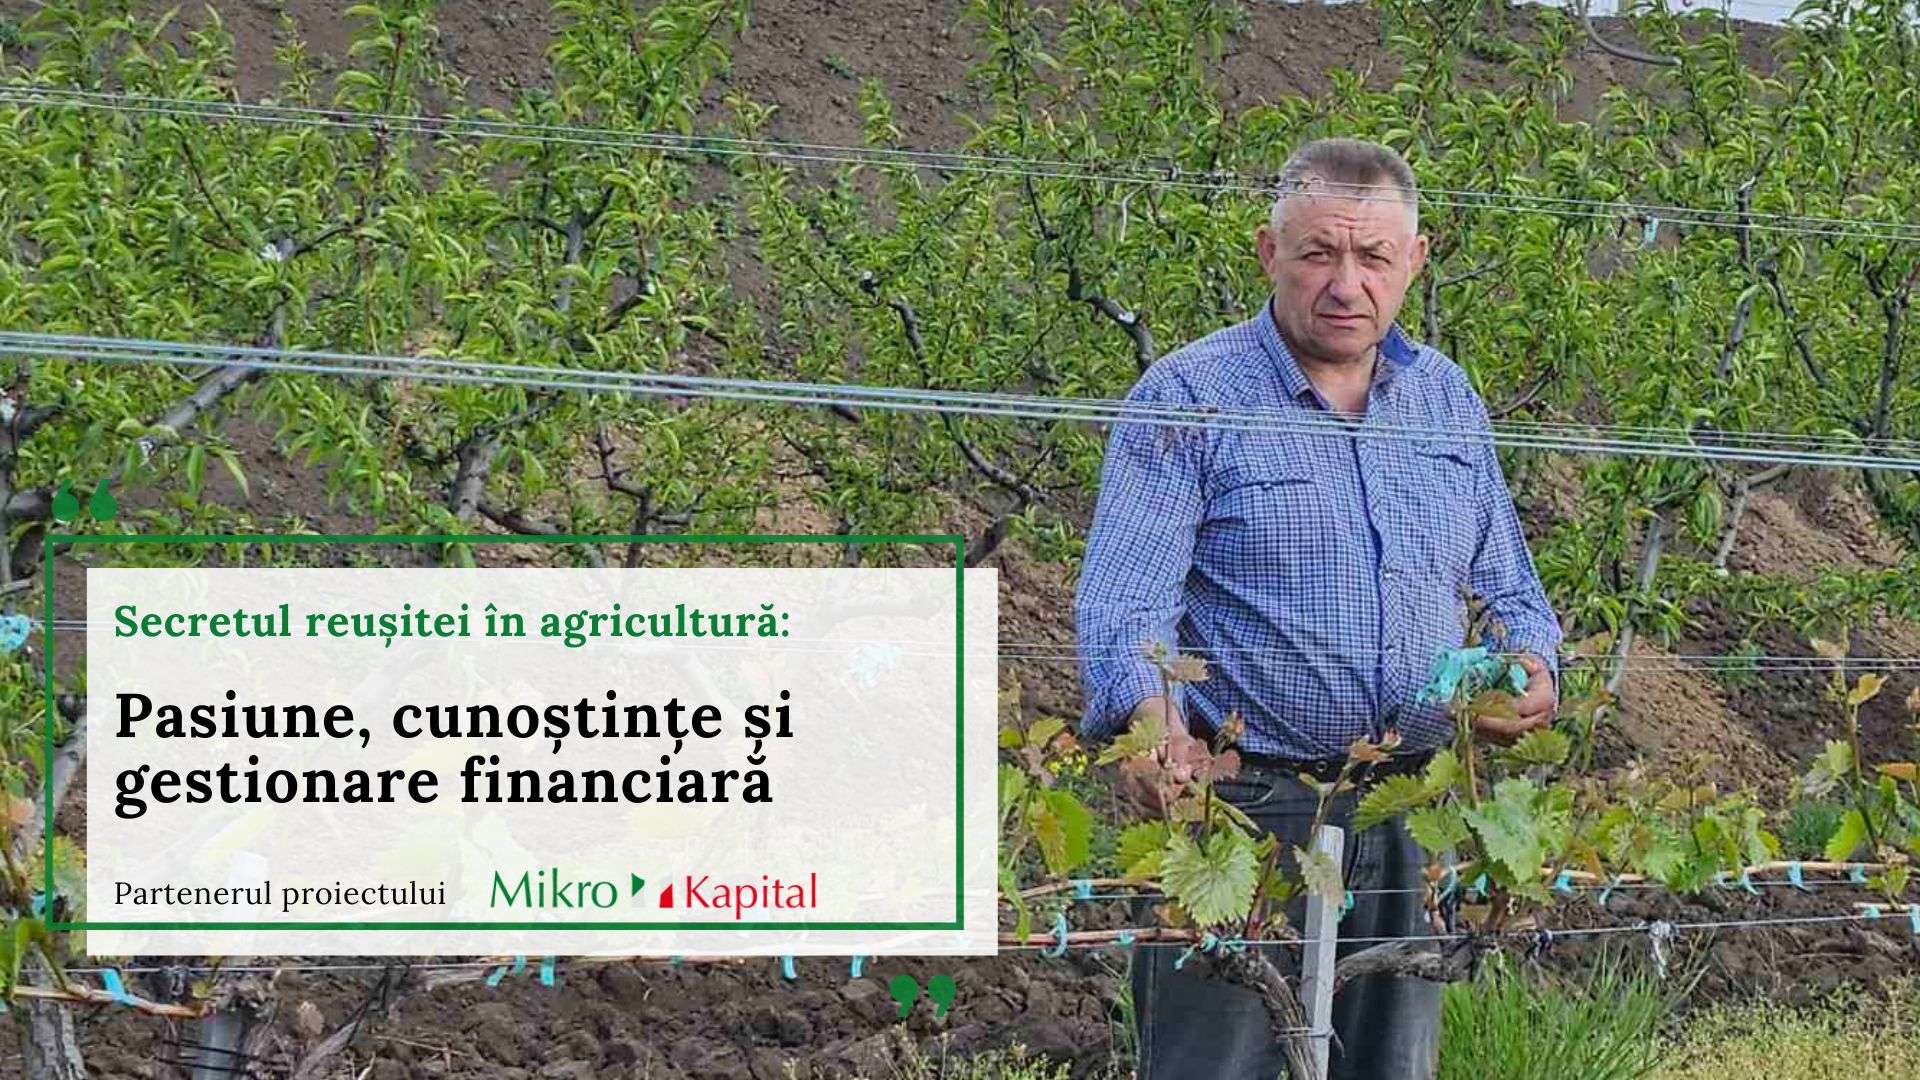 Secretul reușitei în agricultură: Pasiune, cunoștințe și gestionare financiară - agroexpert.md